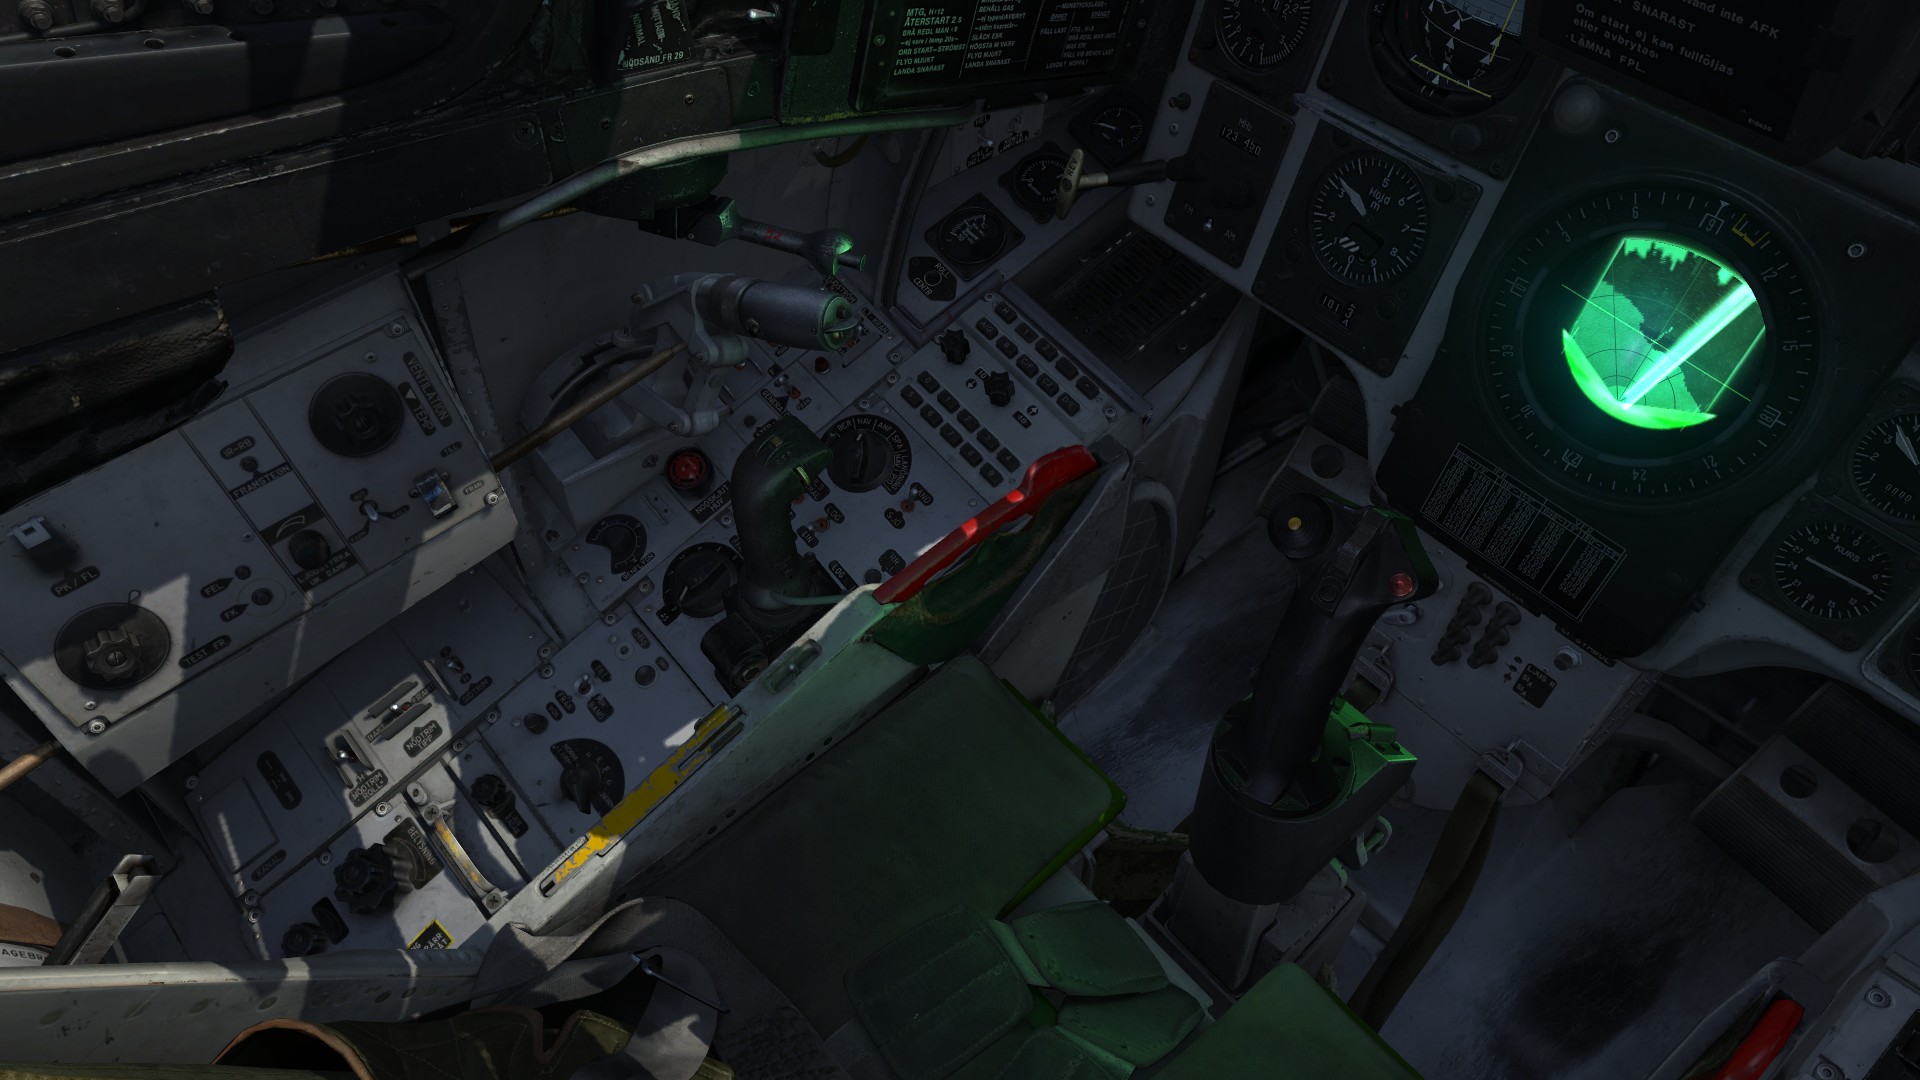 DCS: AJS-37 Viggen screenshot